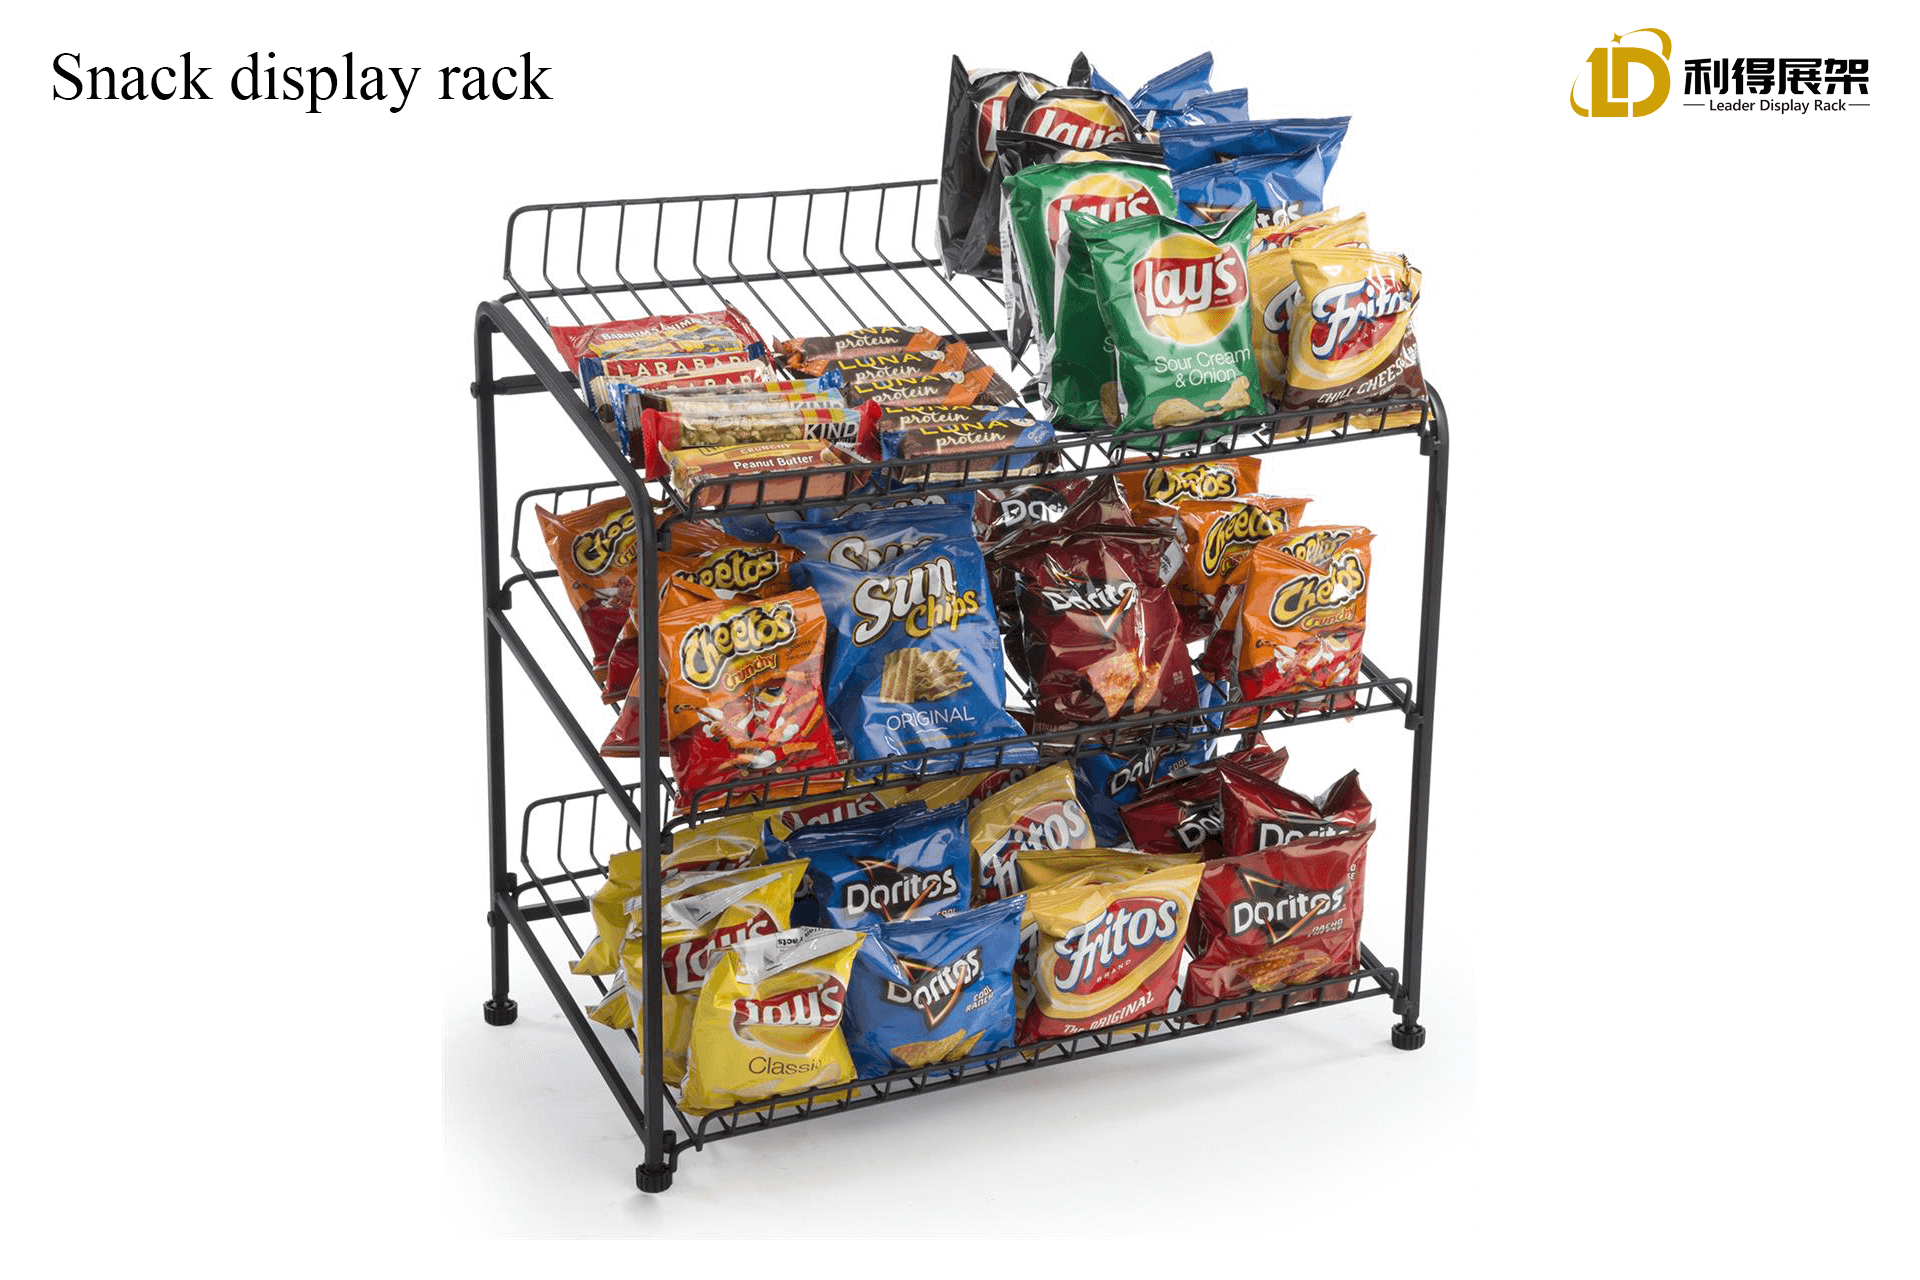 Snack display rack